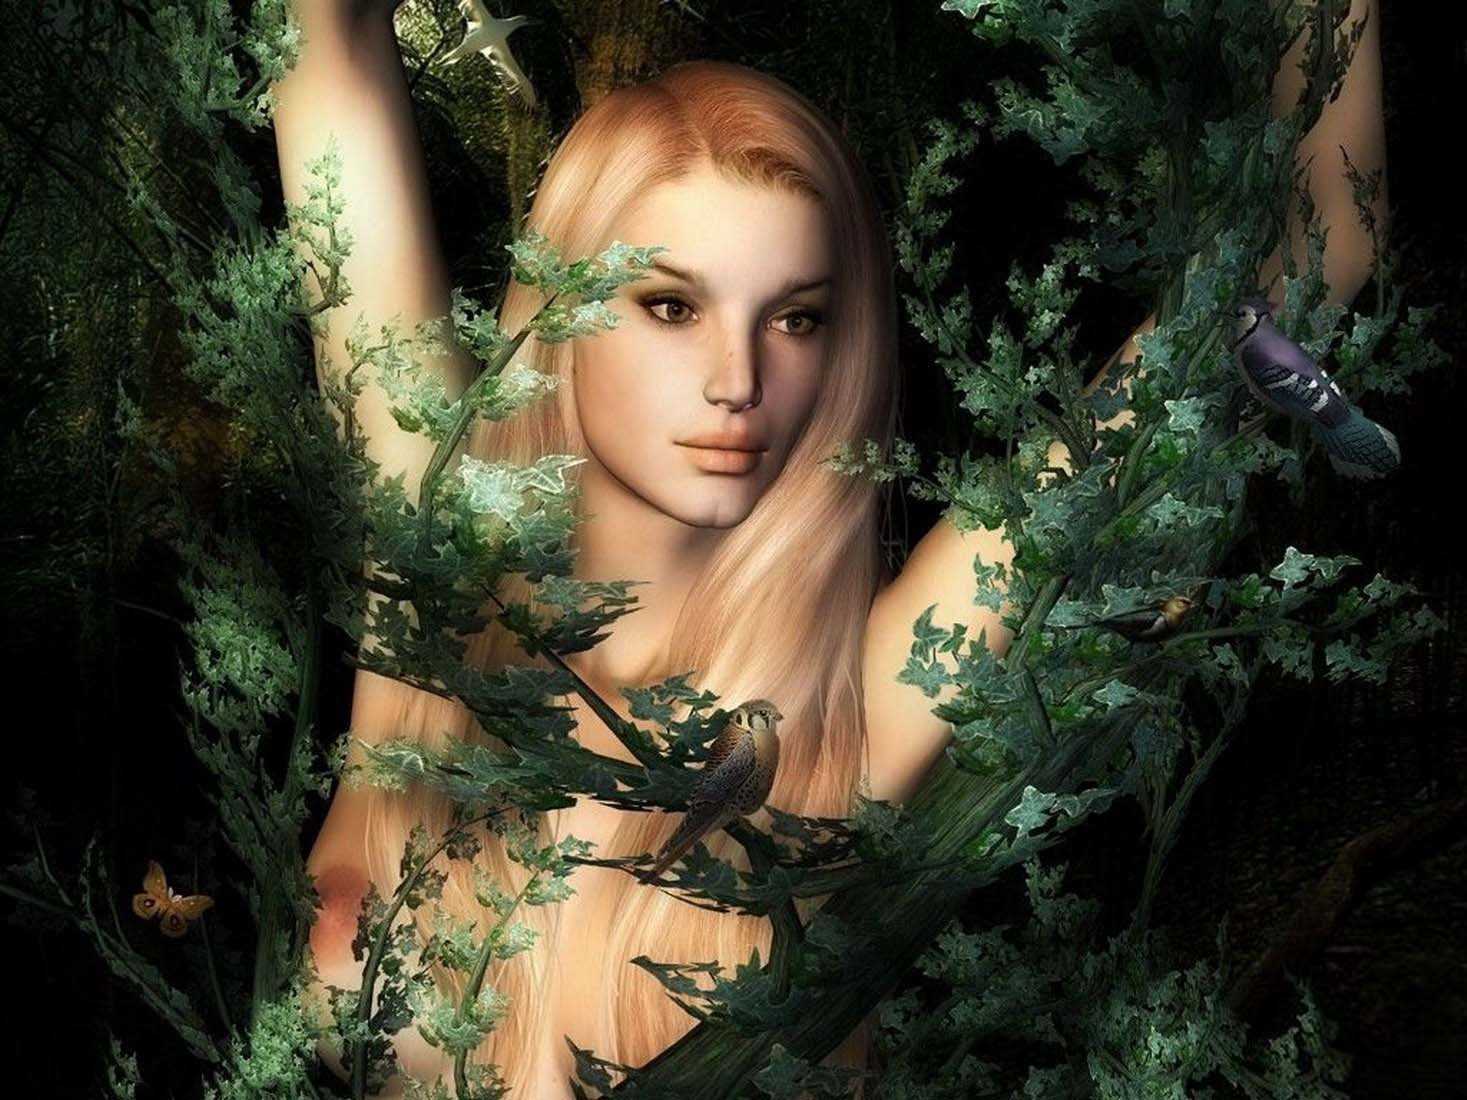 Дриады в мифологии — божества живущие в лесу